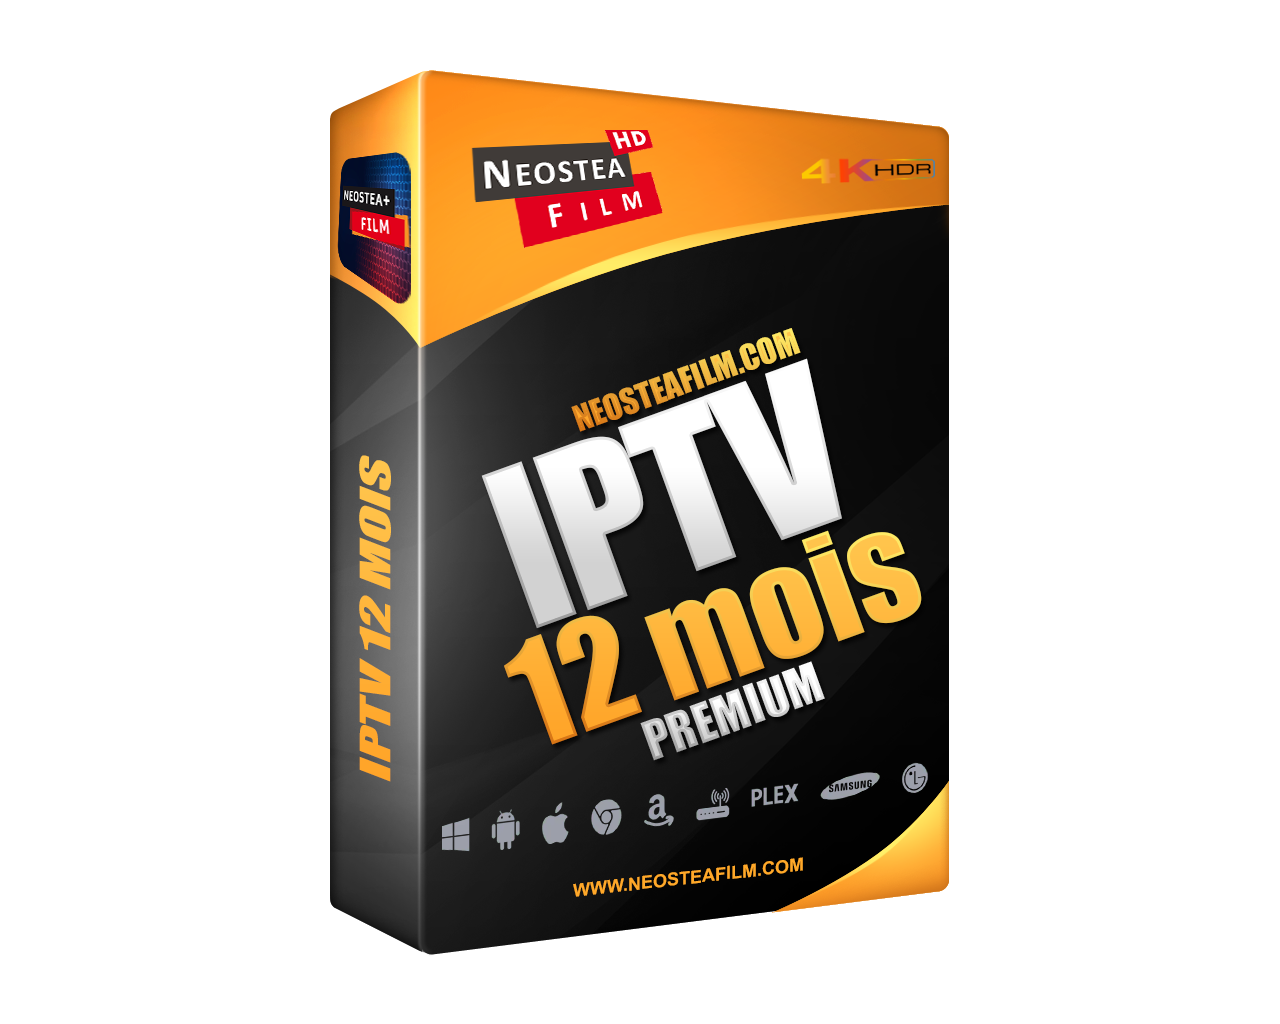 Abonnement Iptv 12 Mois - serveur rapide et stable avec qualité FHD